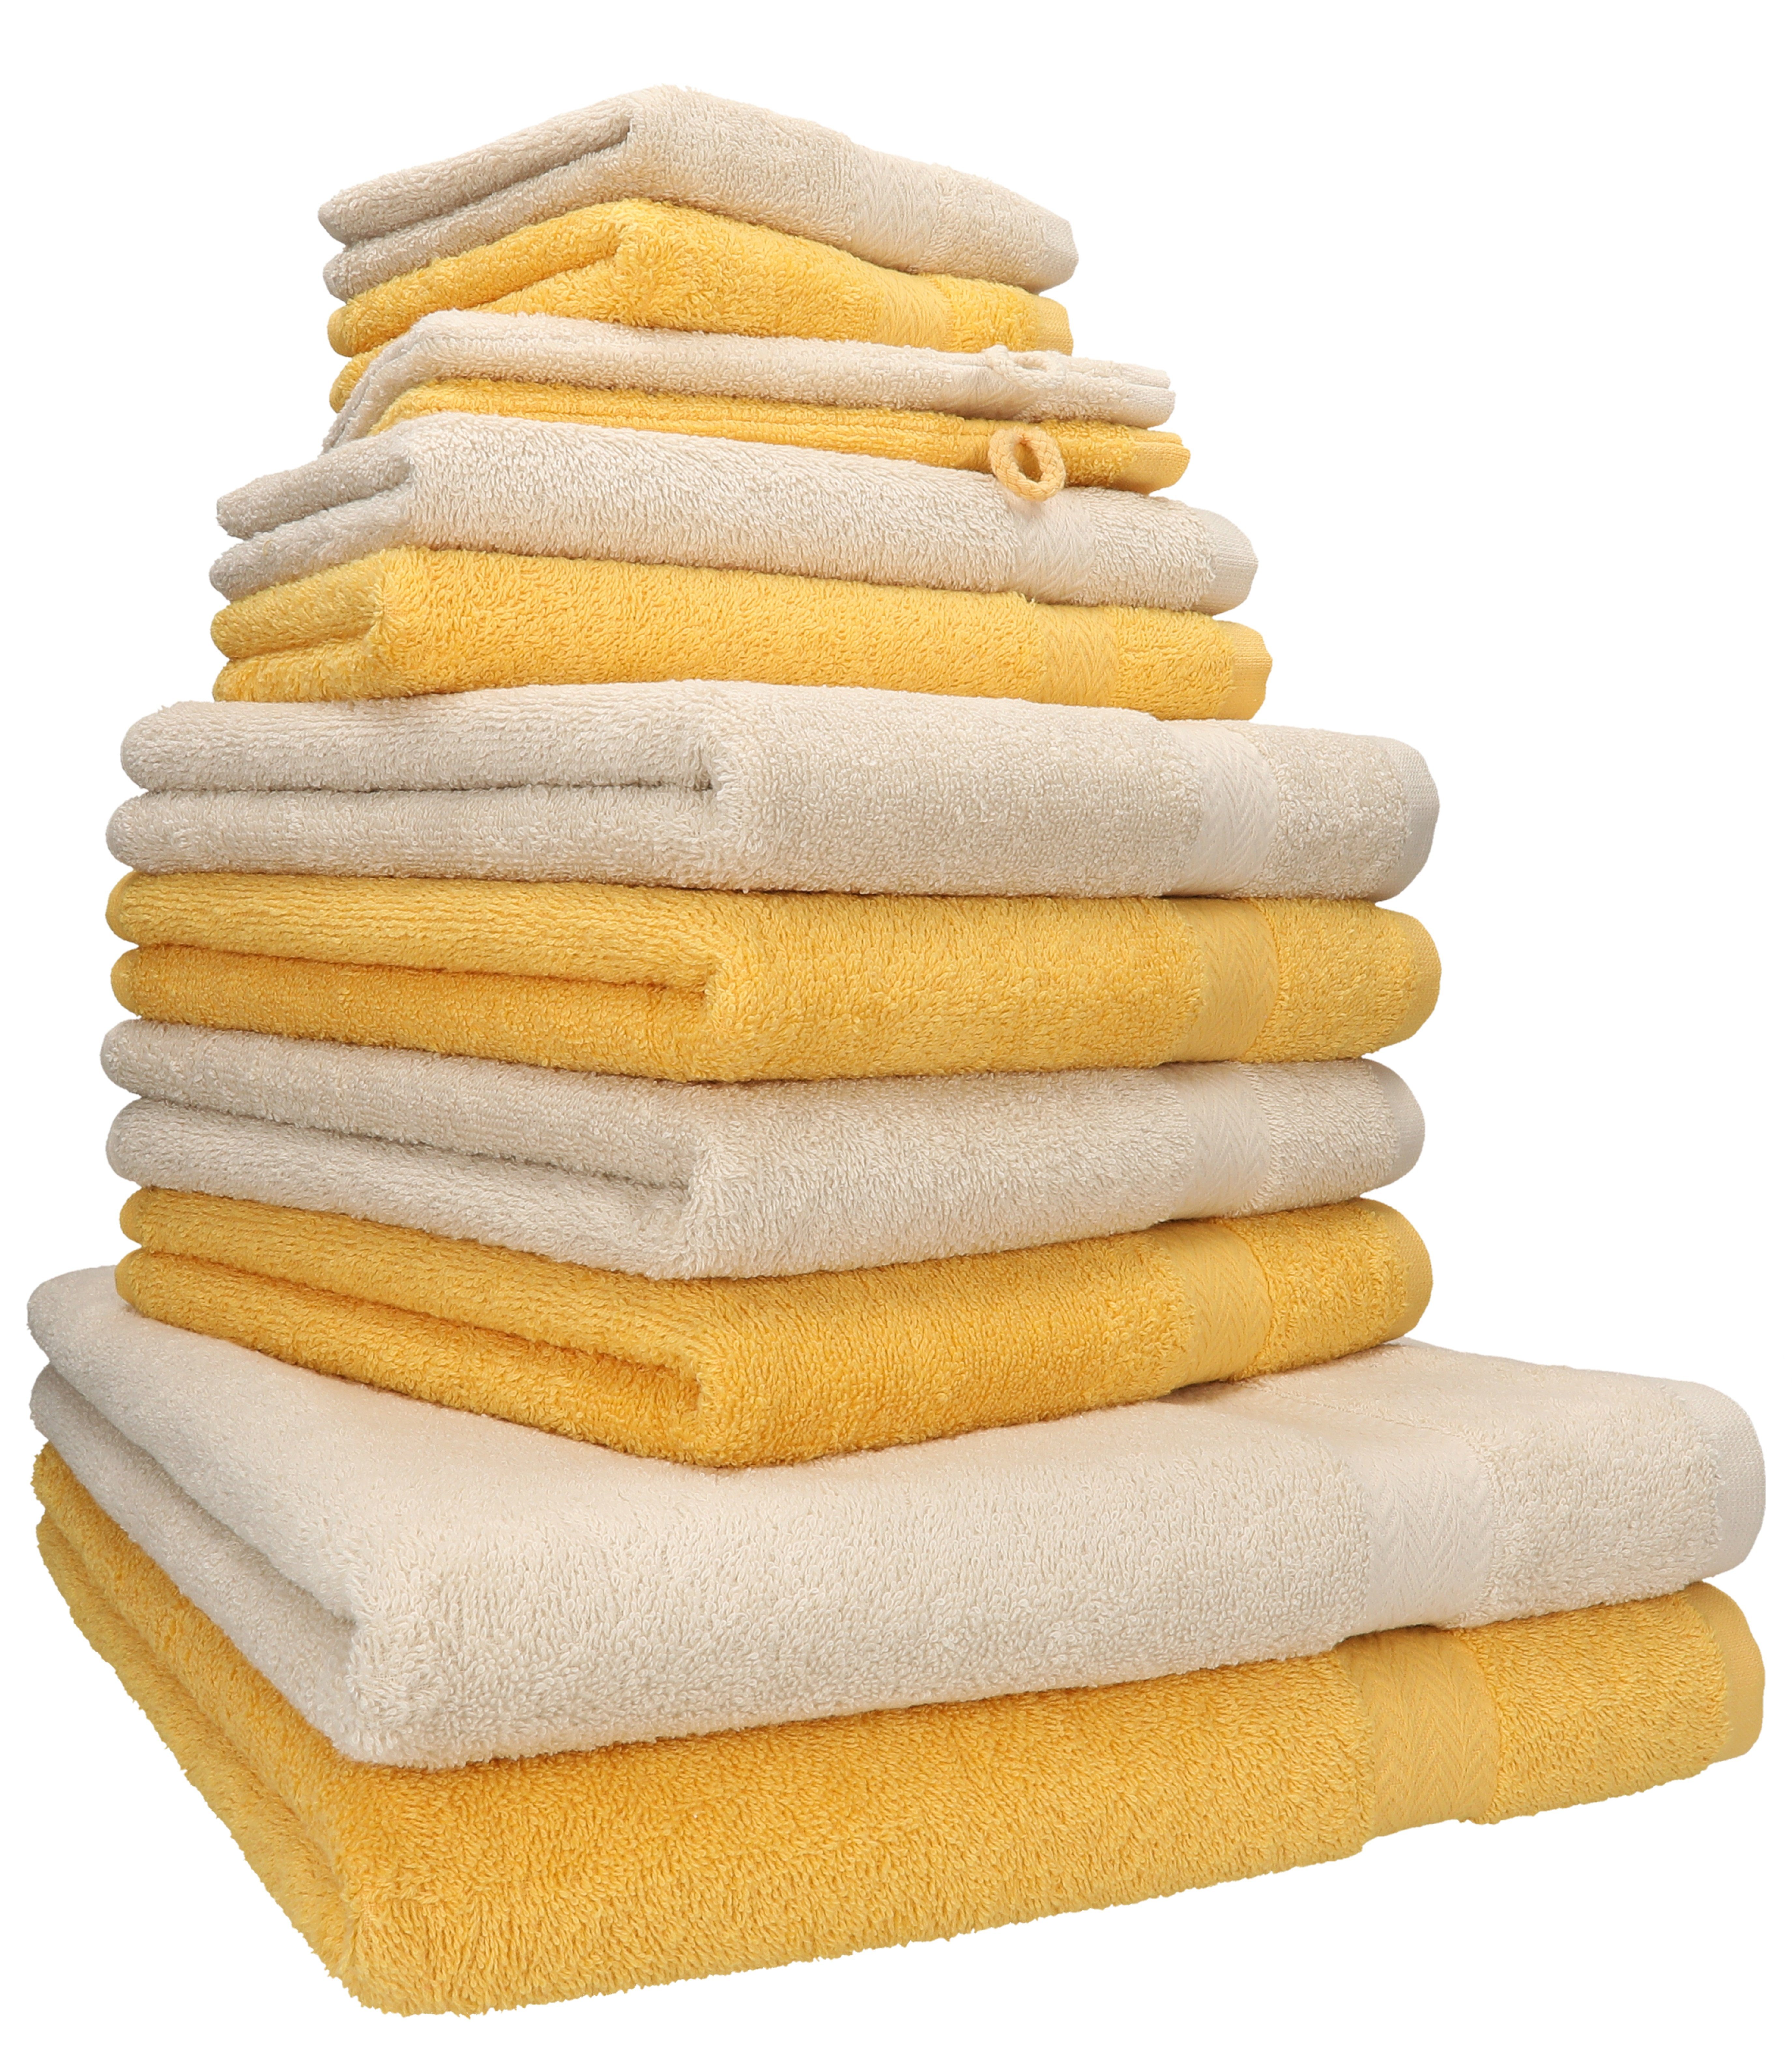 Betz Handtuch Set 12-tlg. Handtuch Set Premium Farbe honiggelb/Sand, 100% Baumwolle, (12-tlg)